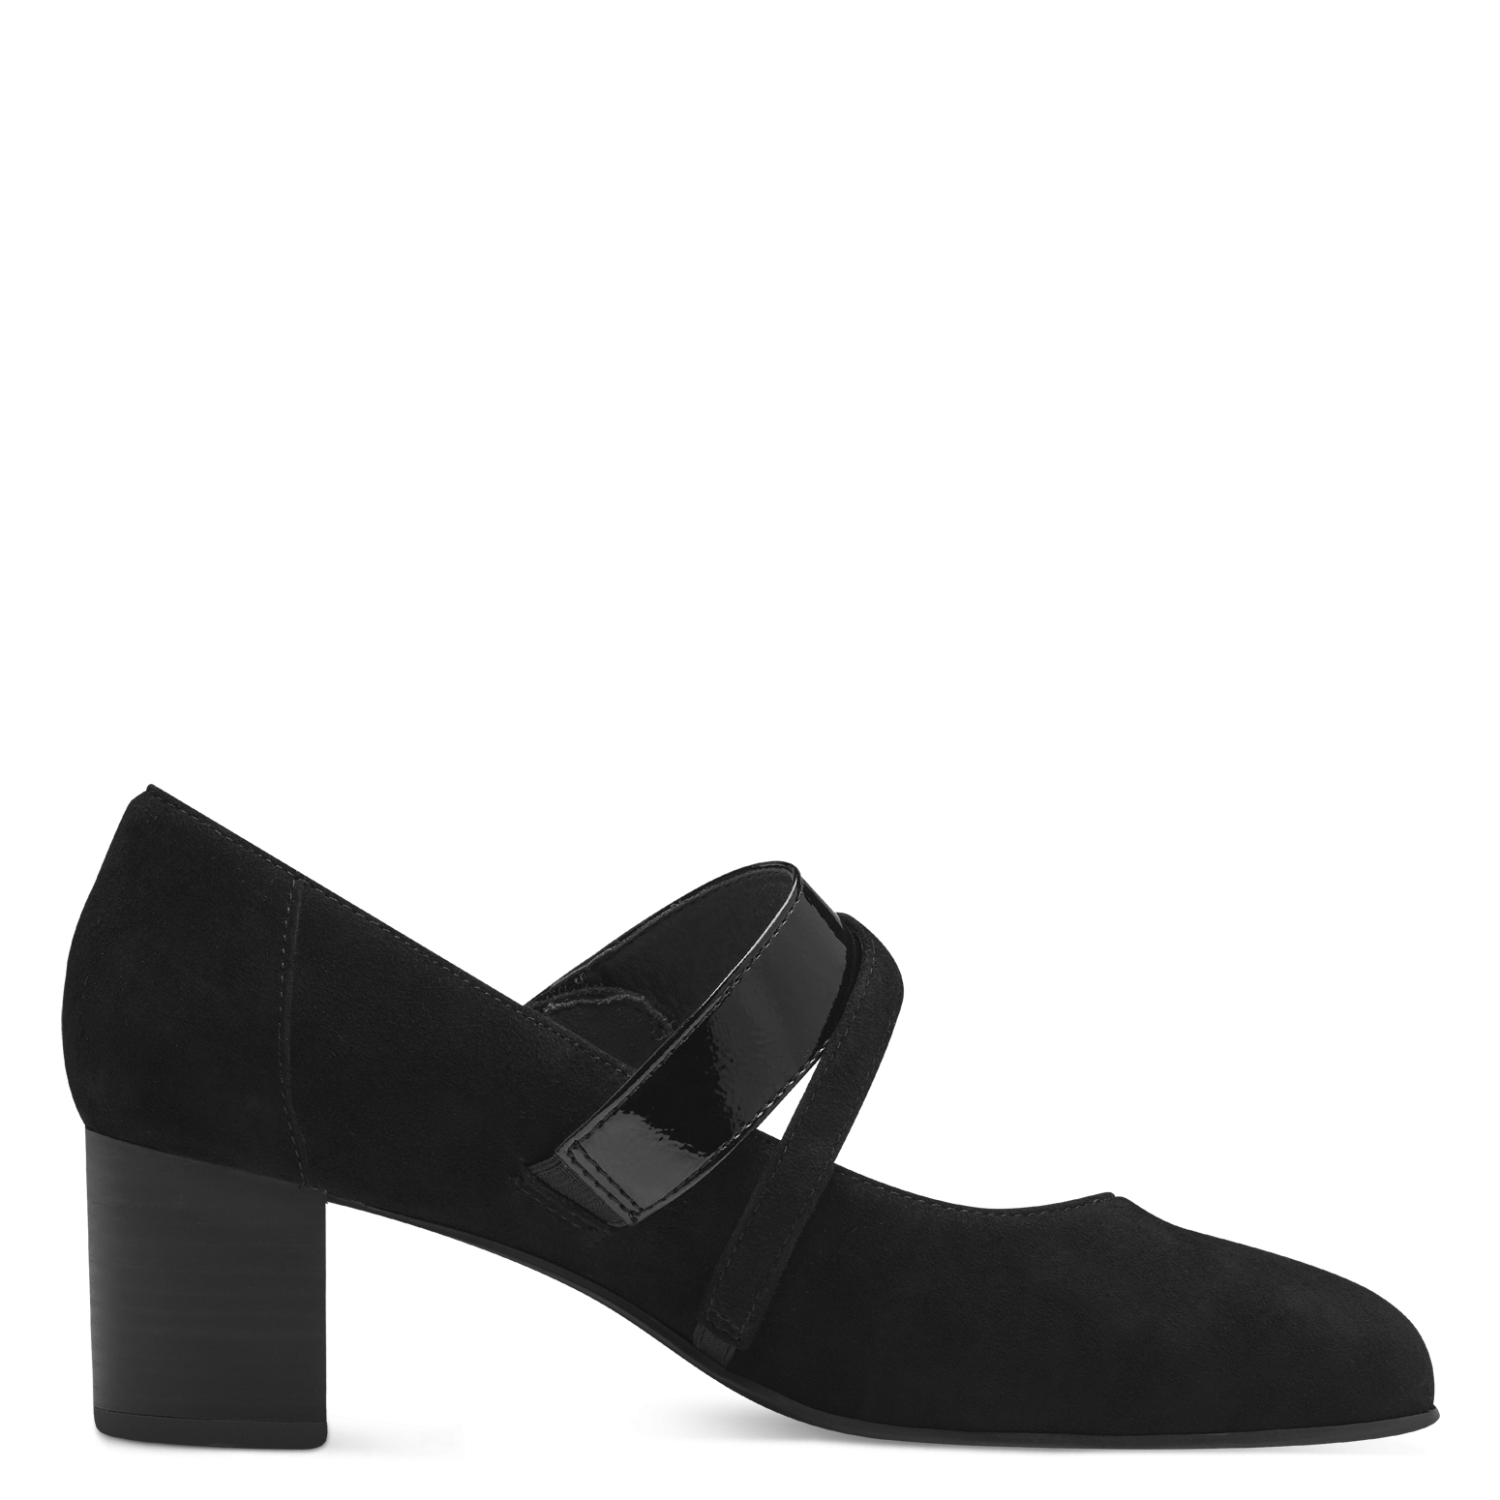 Pantofi Piele Naturala Evelina Black - Tamaris Comfort